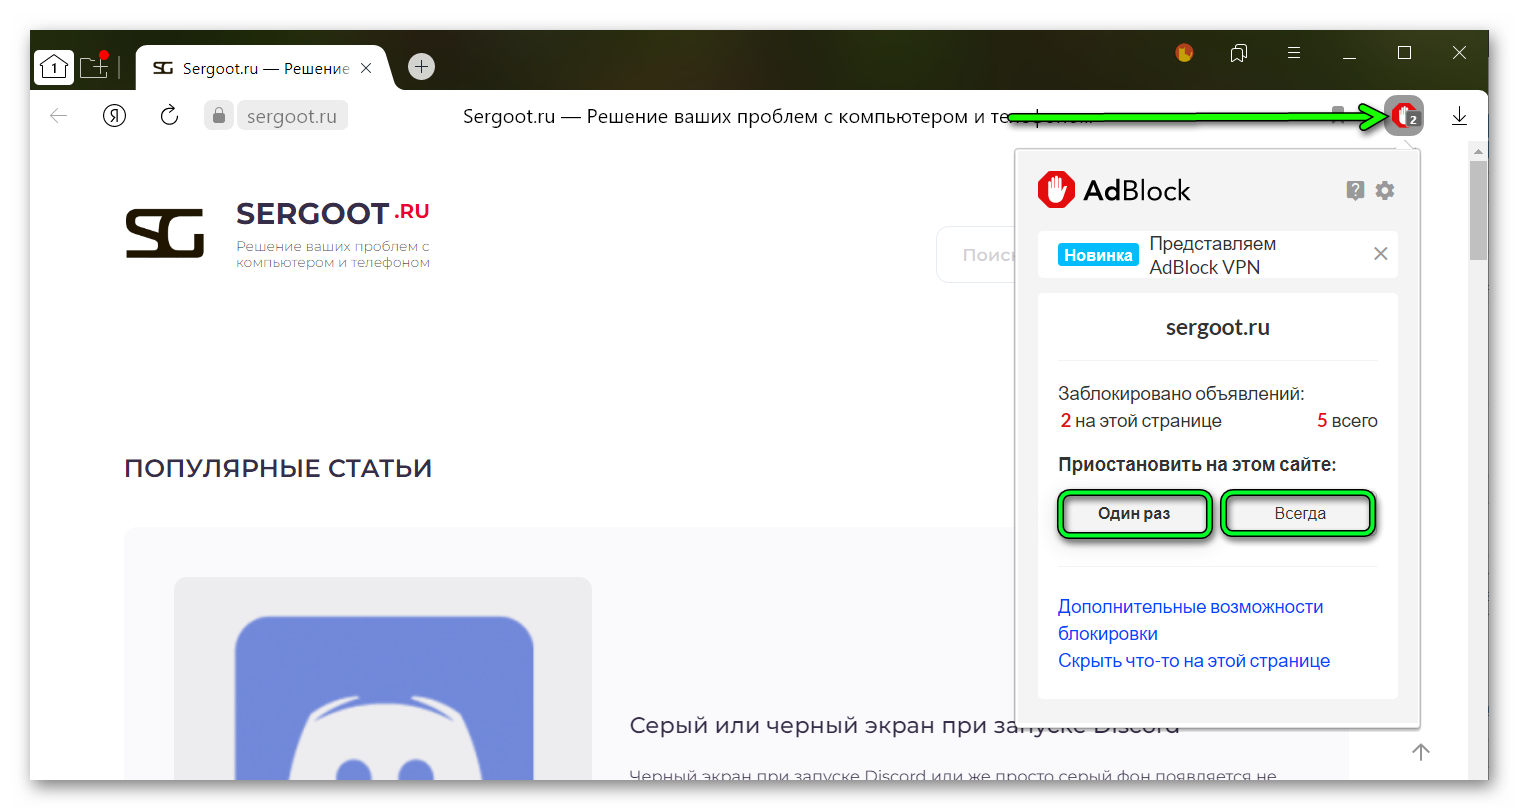 Отключение блокировщика на время или навсегда для конкретного сайта в Яндекс Браузере